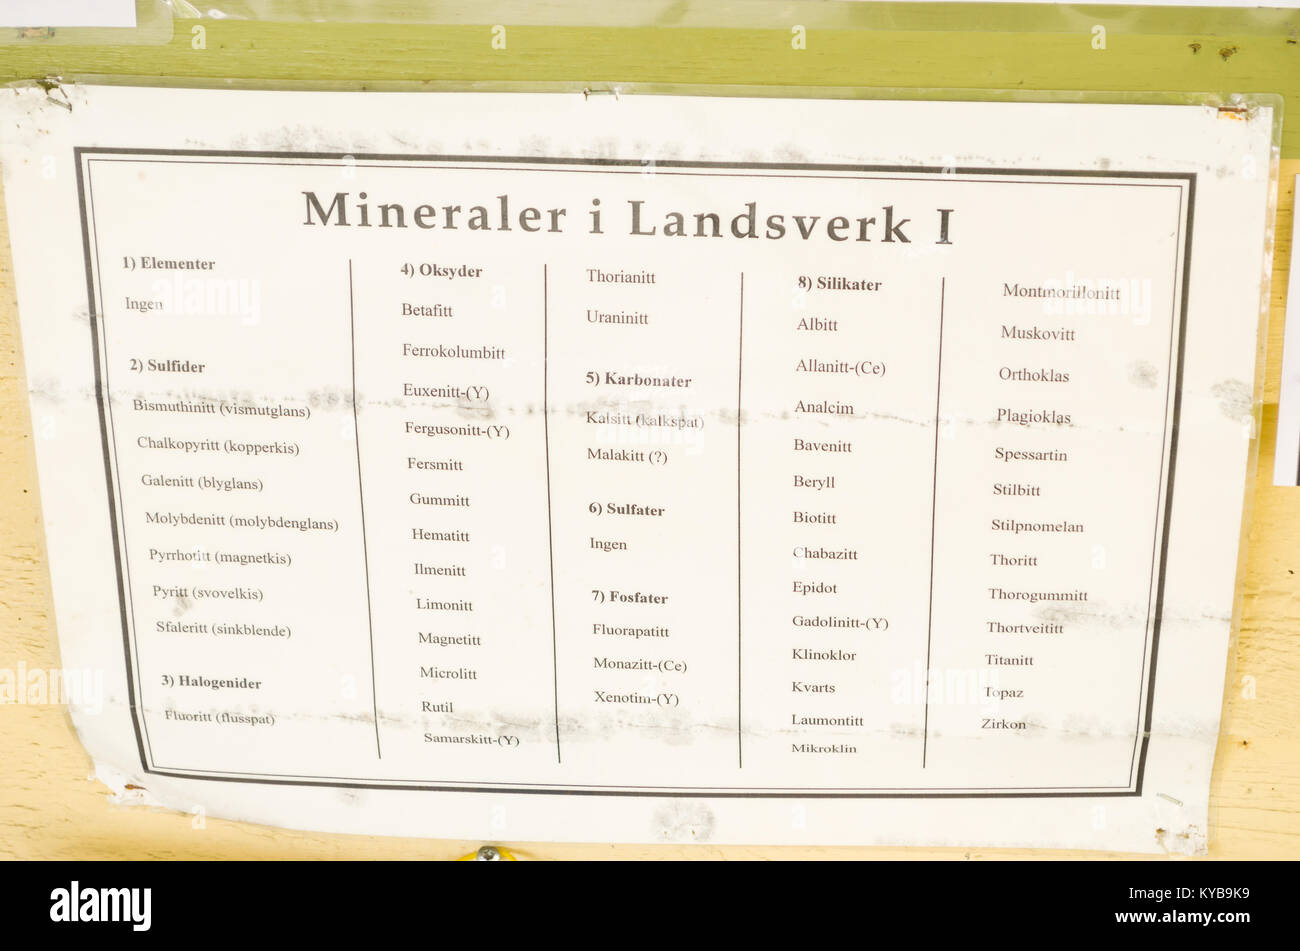 Lange Liste von Mineralien können Sie zu sich selbst finden in Landsverk 1 in Evje Mineralsti - pensionierte Edelsteinmine und lokale touristische Attraktion. Stockfoto